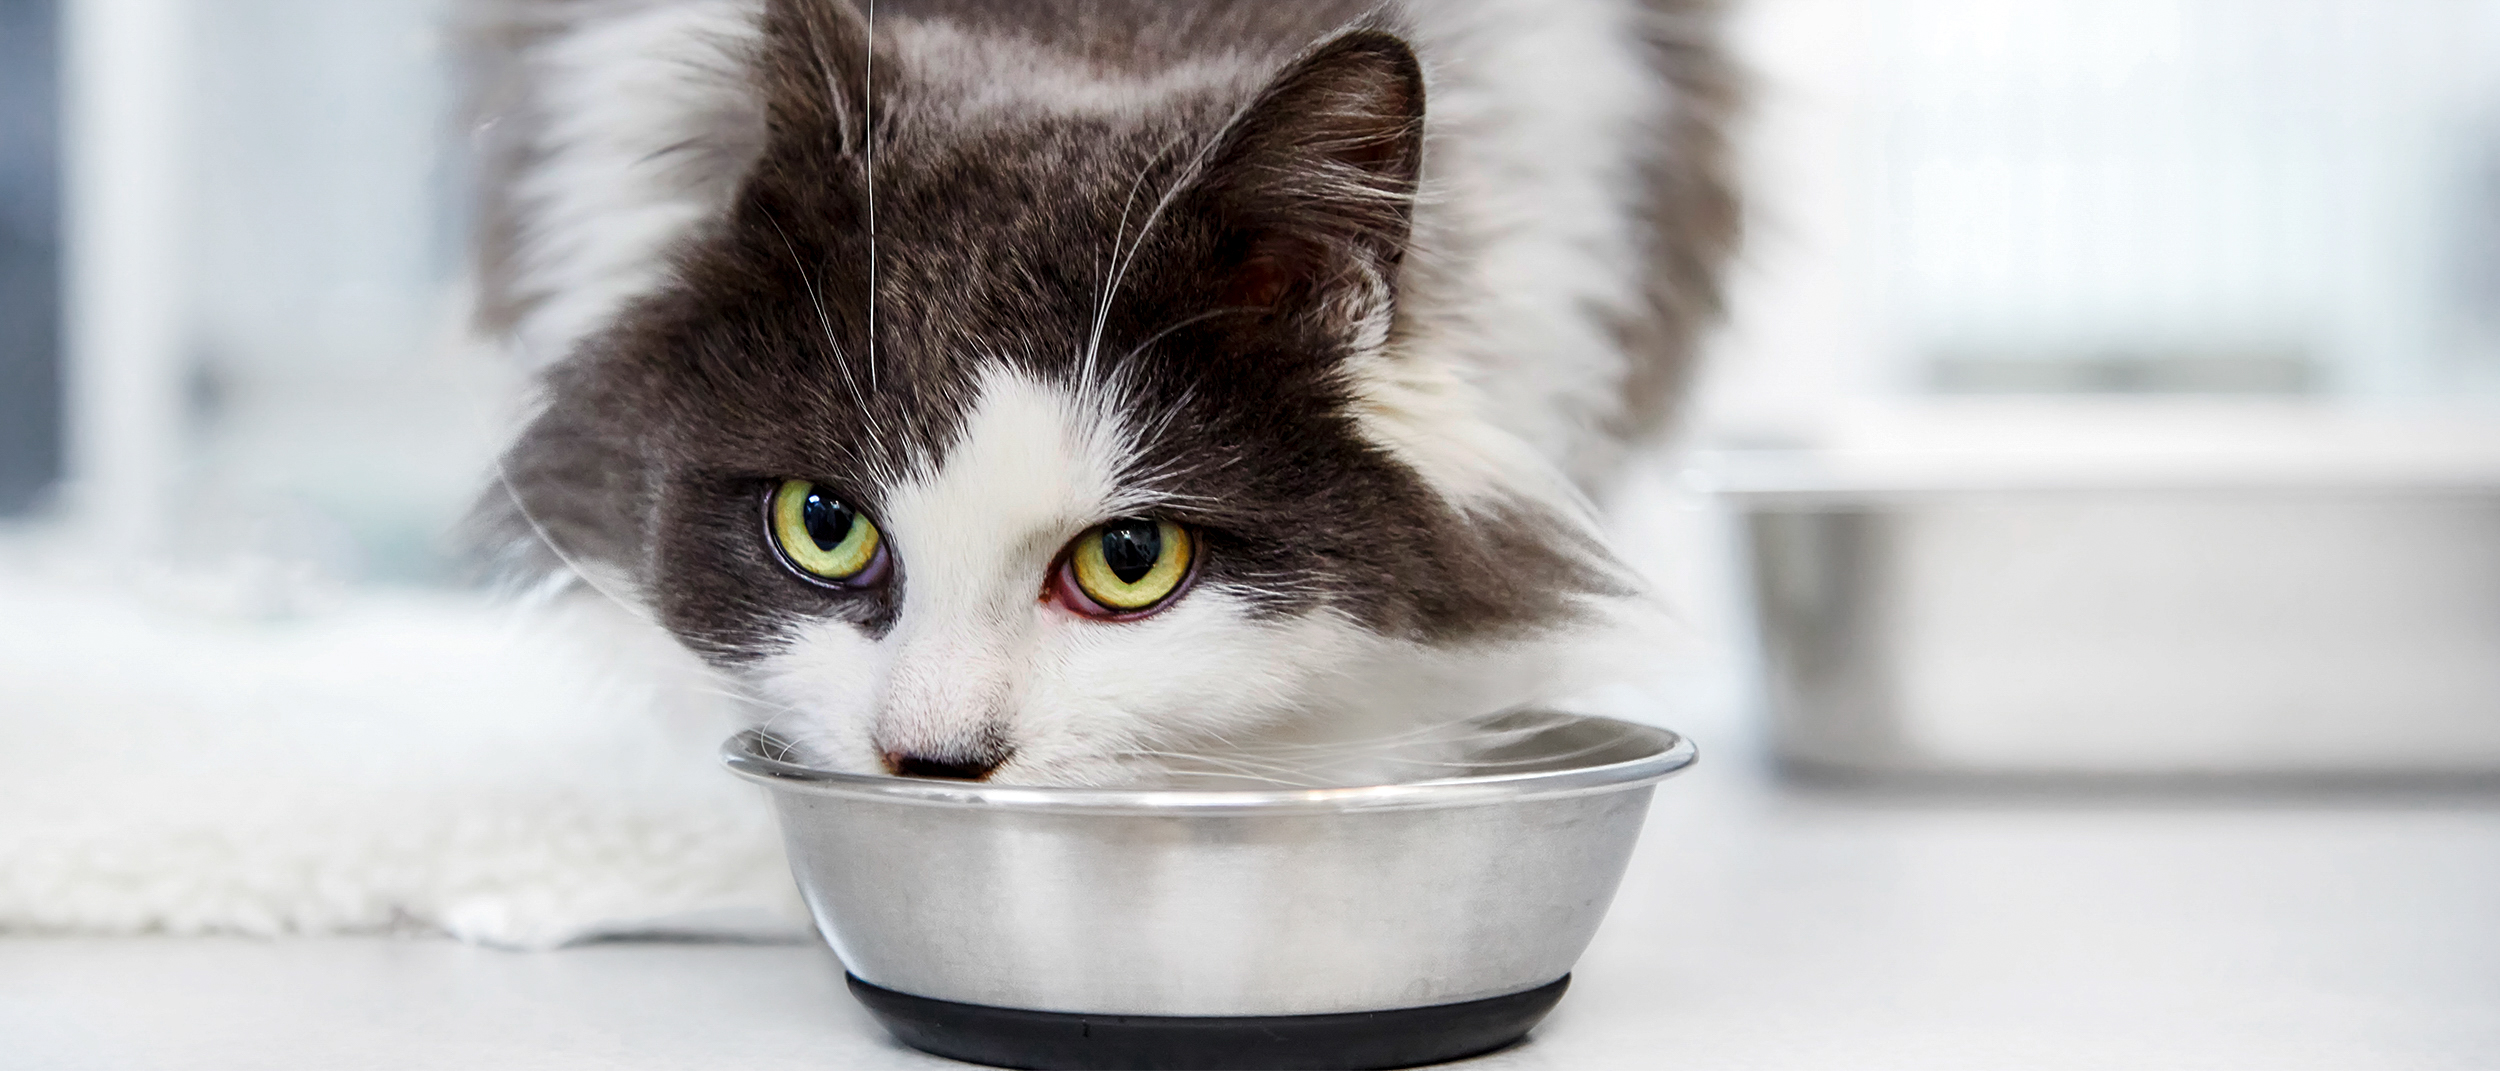 Gatto adulto nell'ambulatorio del veterinario mentre mangia da una ciotola di argento.